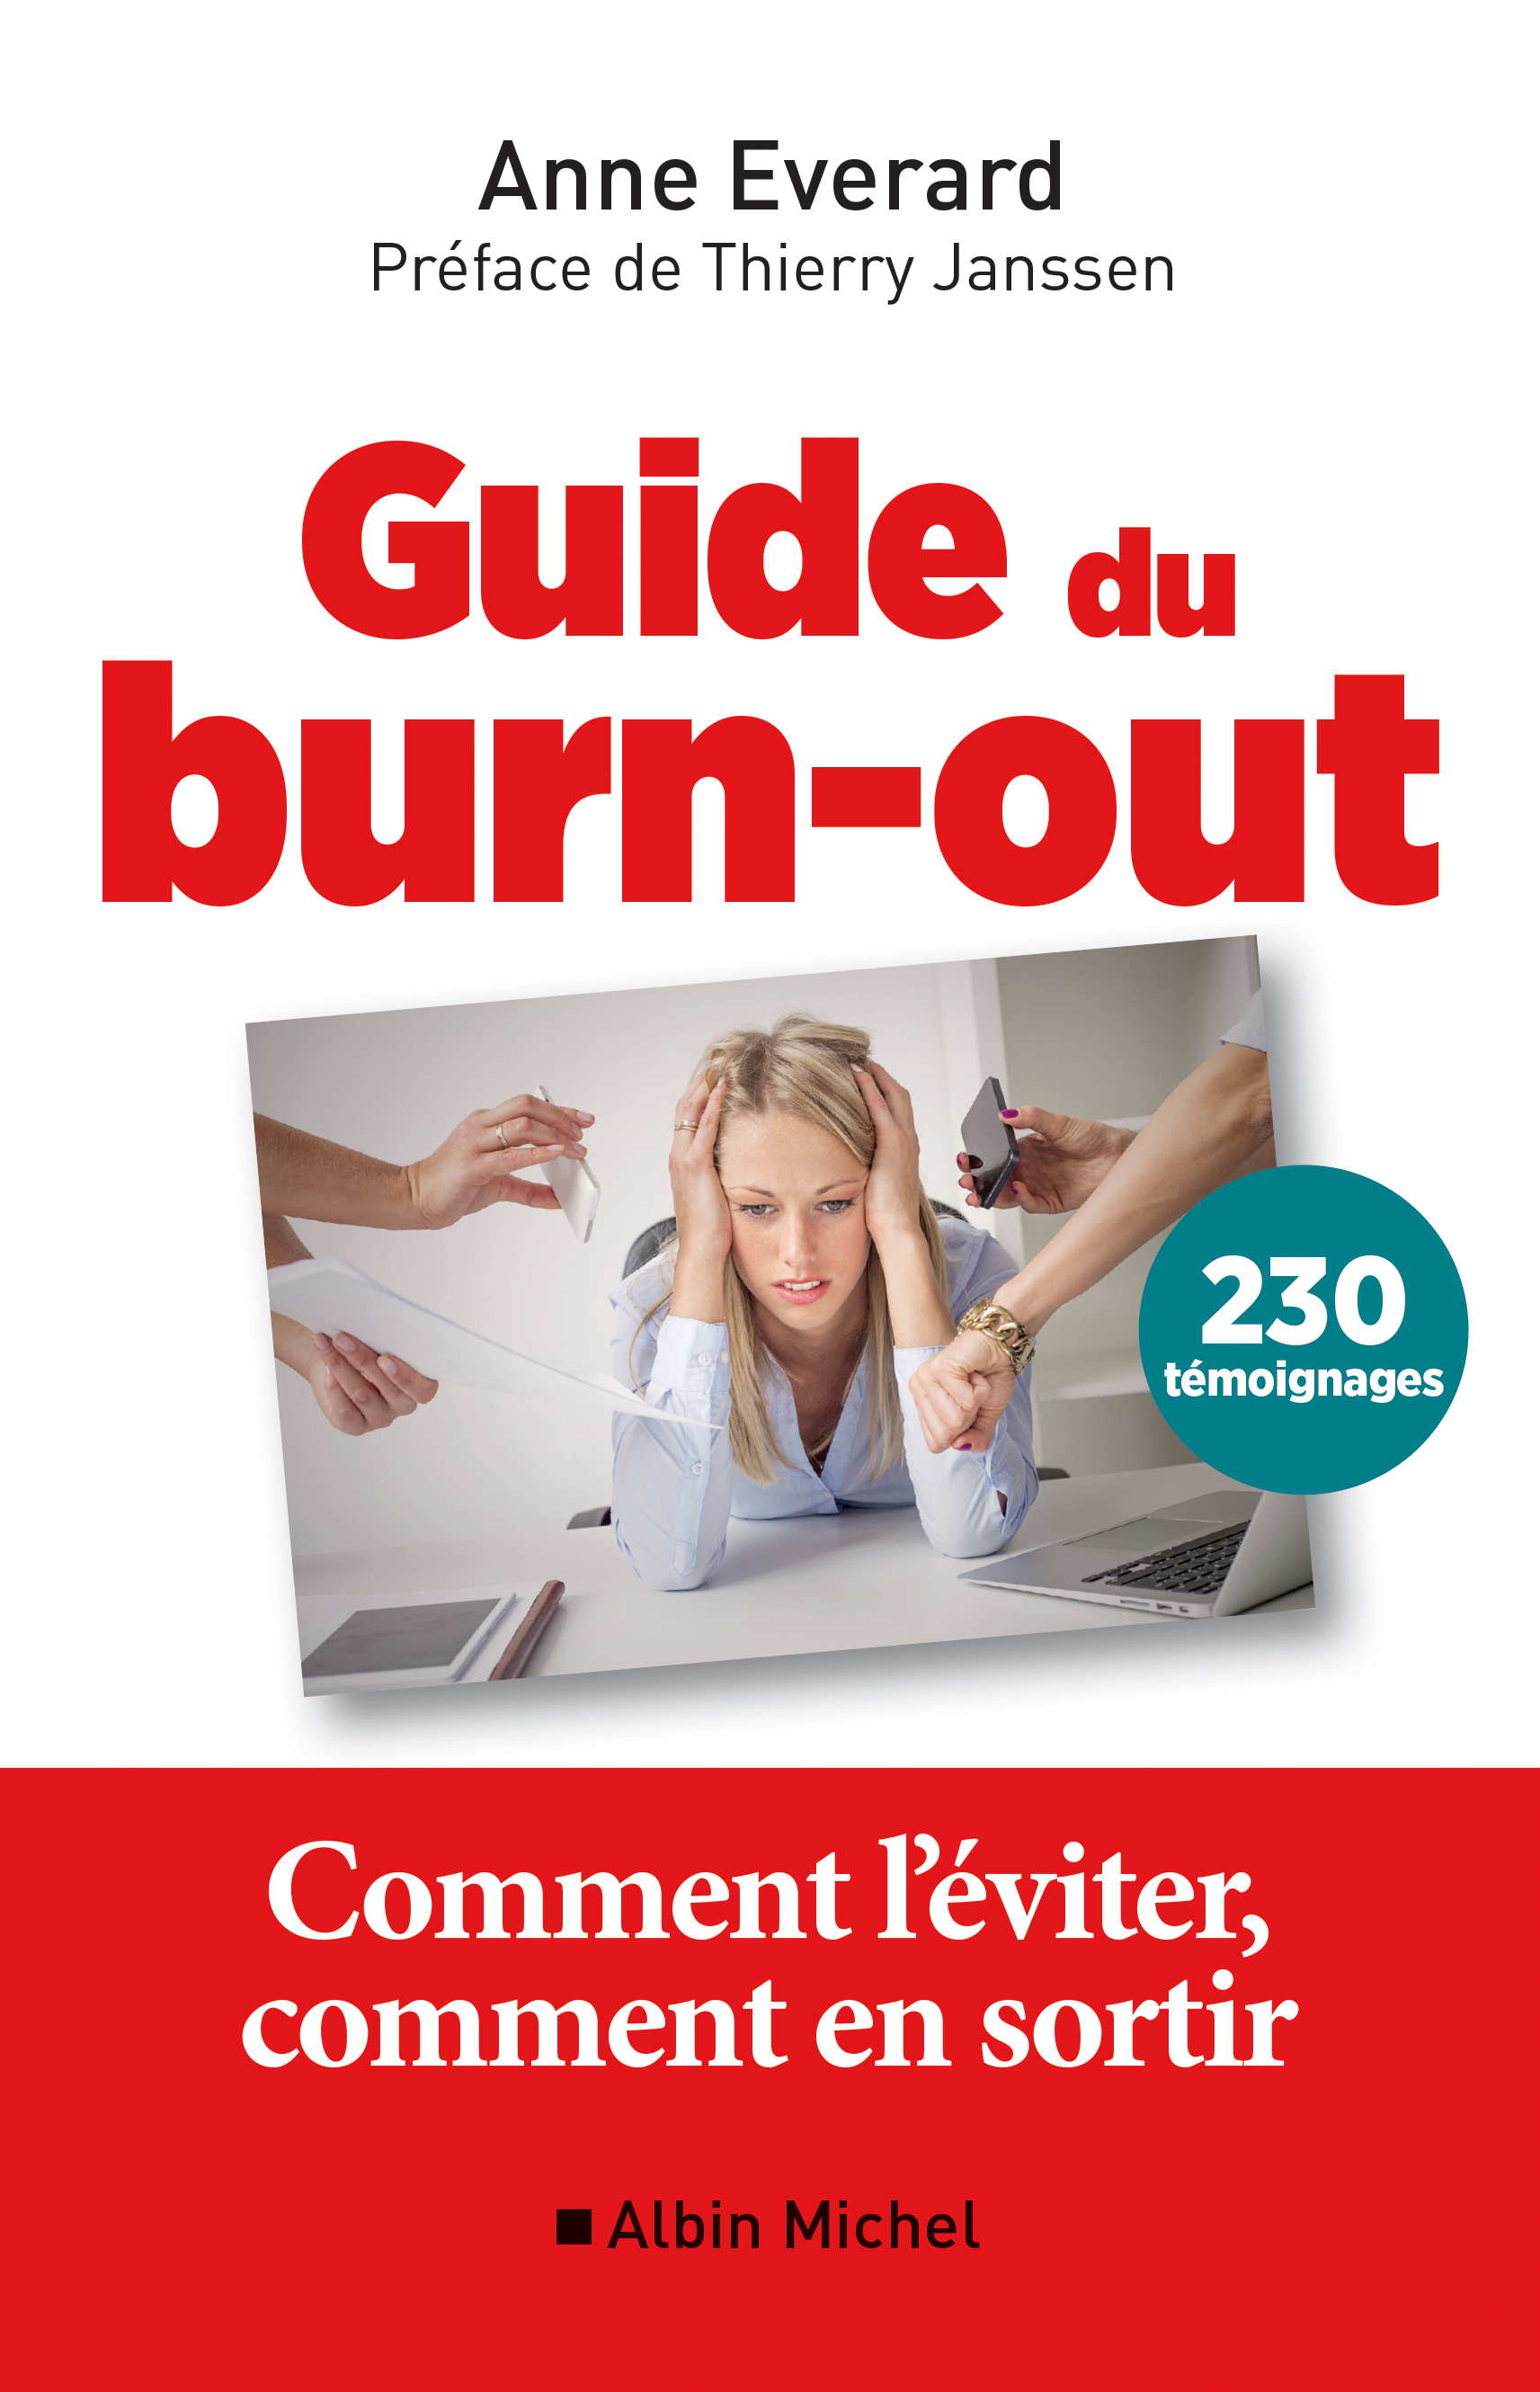 Couverture du livre Guide du burn-out